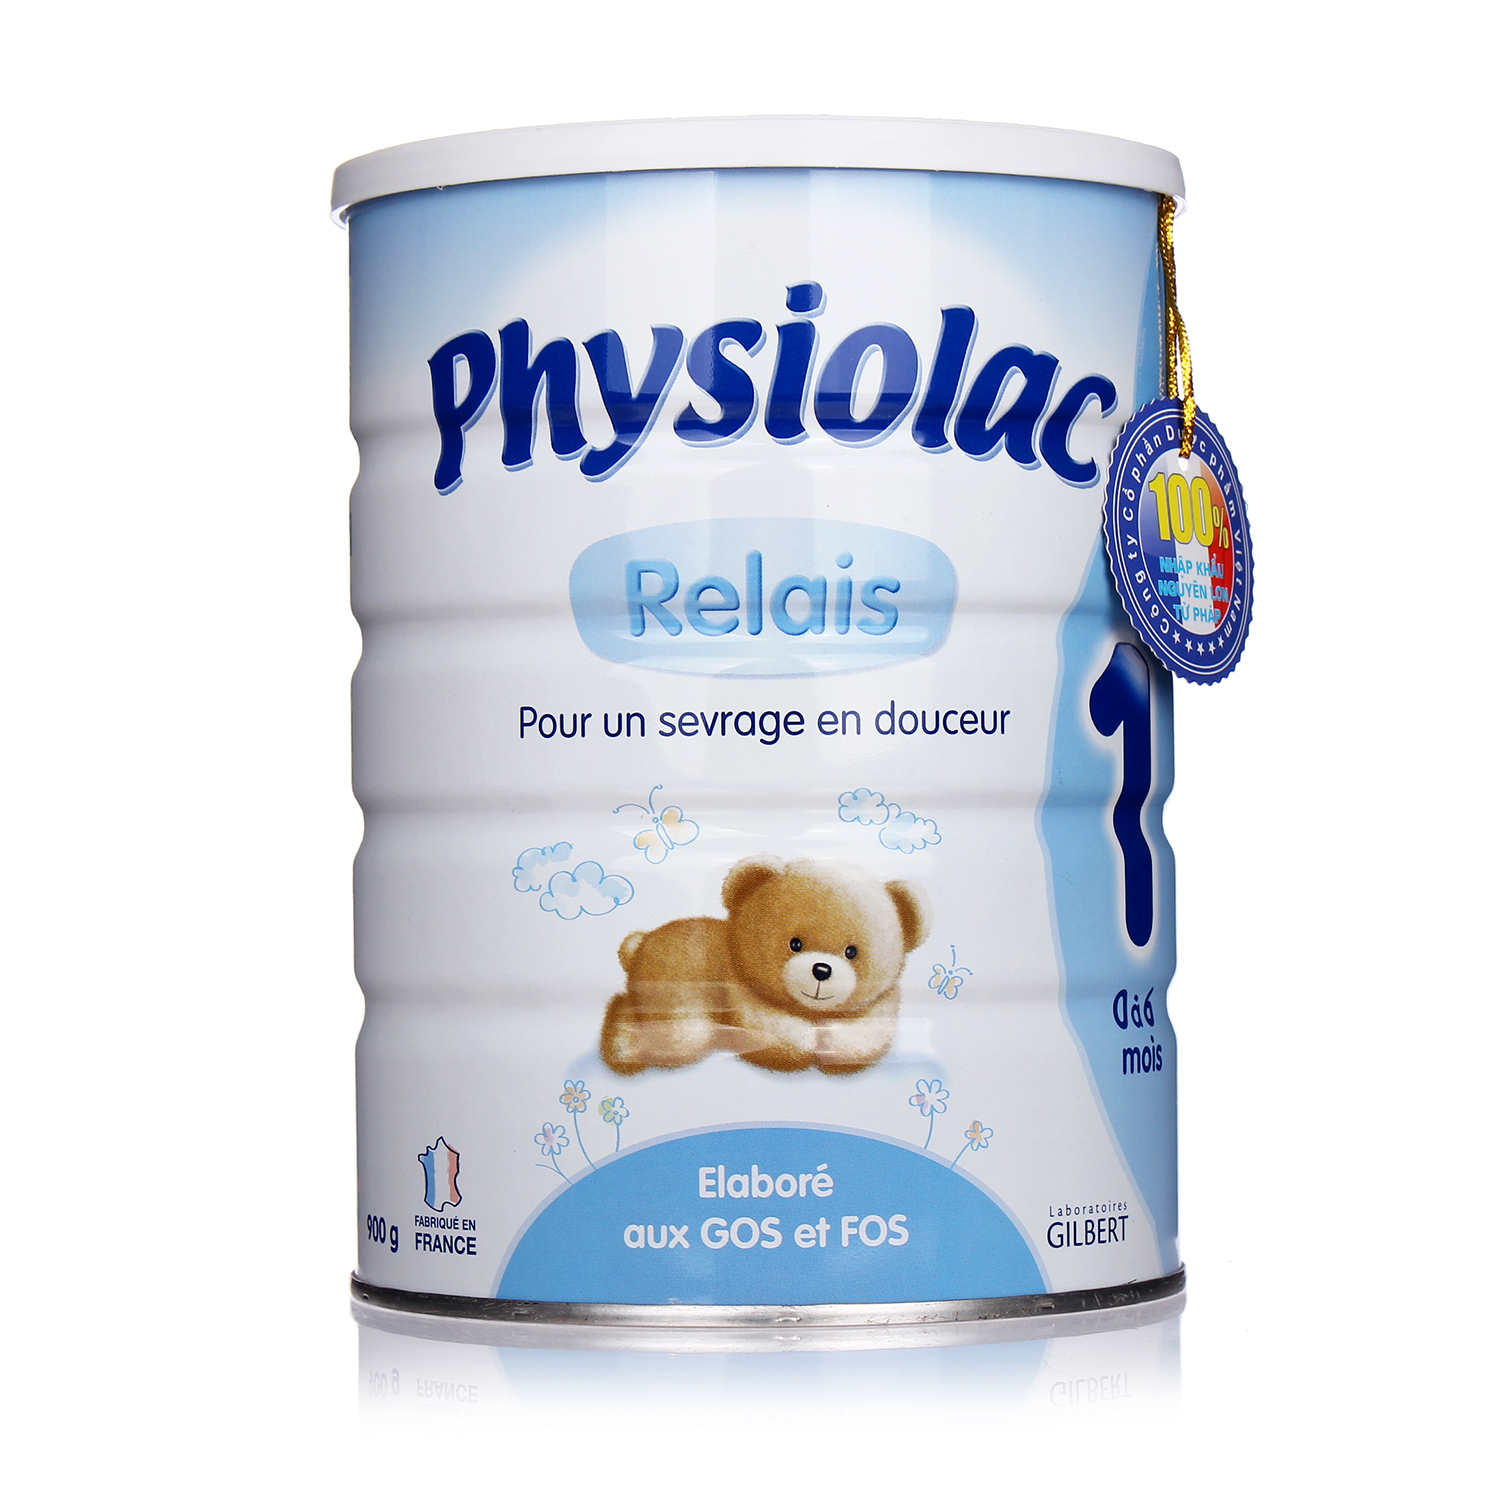 Những loại sữa tăng cân tốt nhất cho bé-physiolac